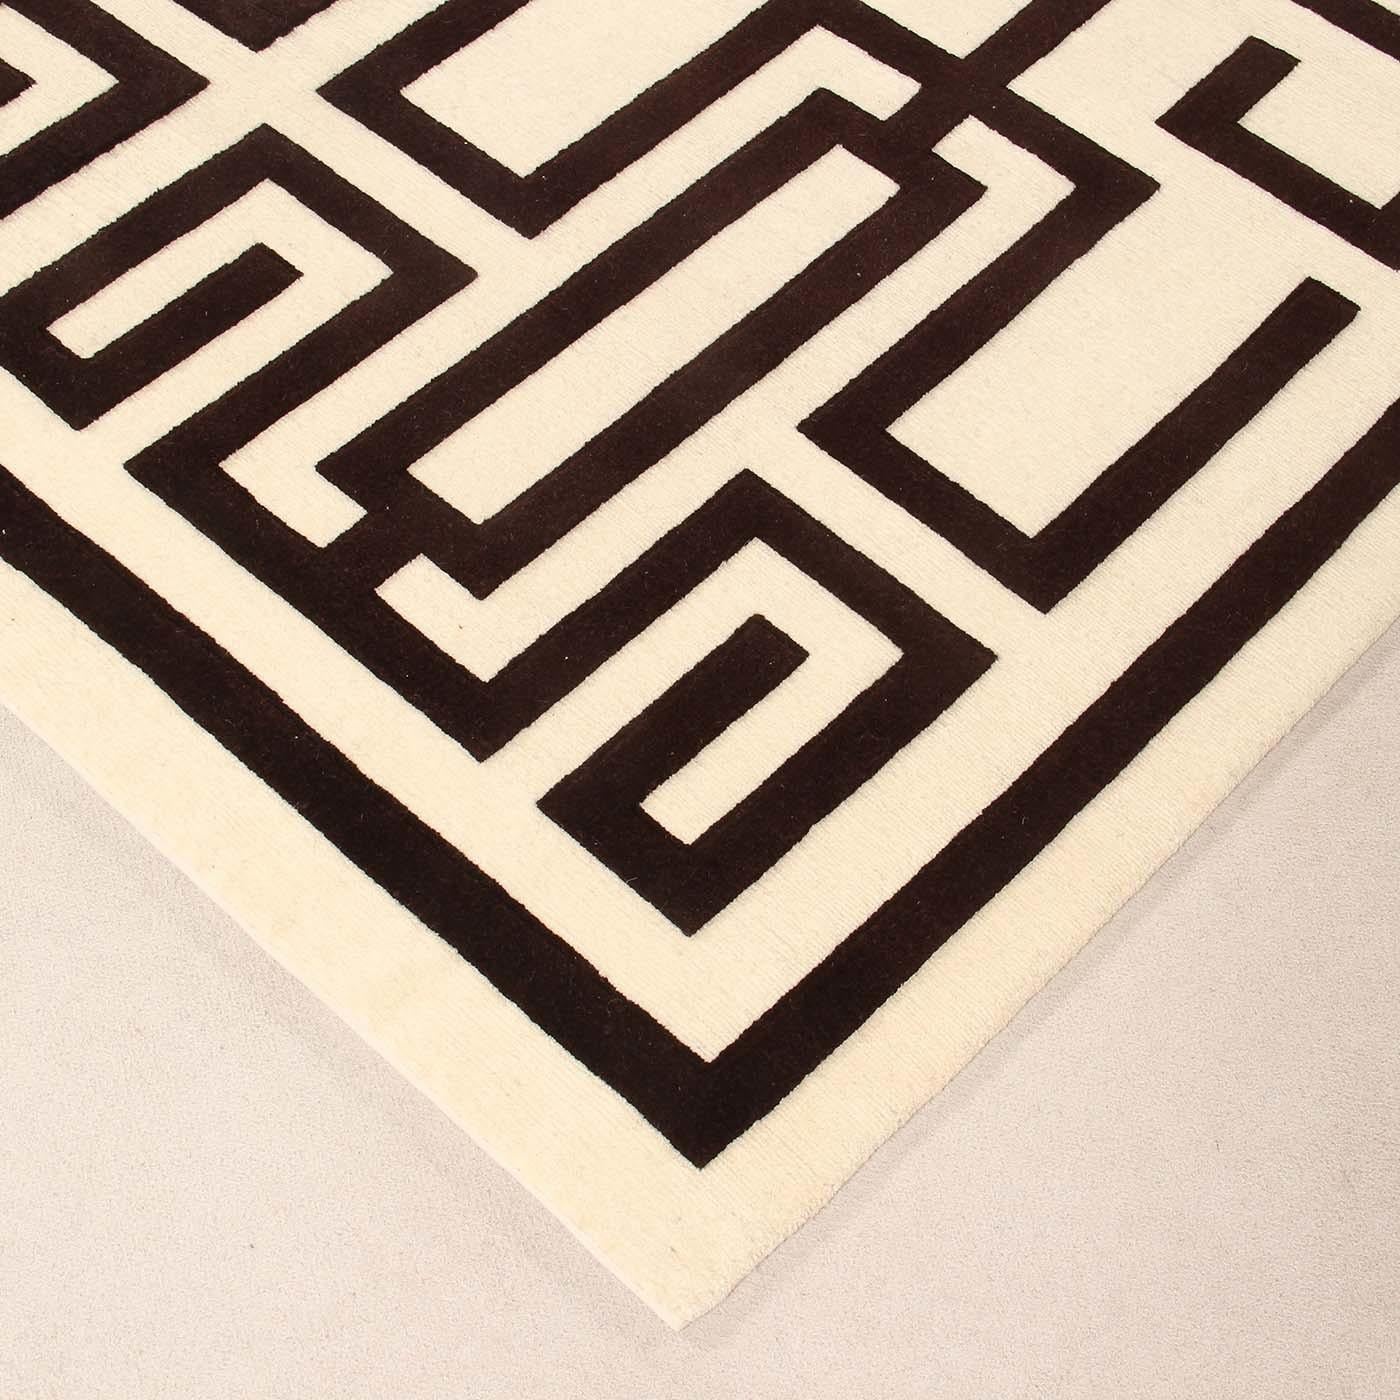 Die Symmetrie des Musters, die Kontraste zwischen den Hintergründen und die Zeichnung verleihen dem Labirinto-Teppich Tiefe. Ein faszinierendes dreidimensionales Muster, das ursprünglich von Gio Ponti entworfen wurde, um eine moderne und doch